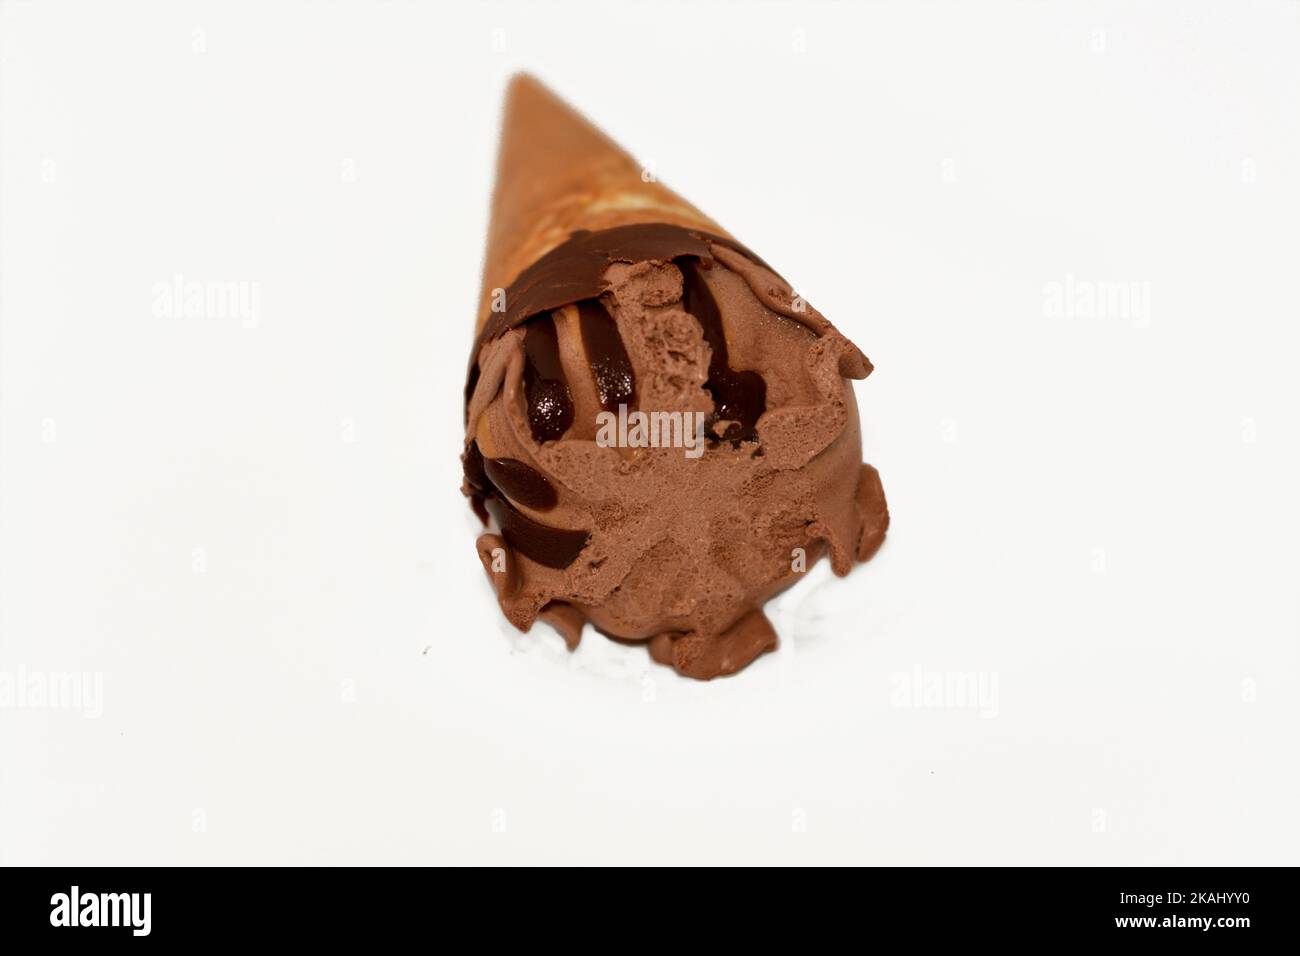 Schokolade-Vanille-Eiscreme-Kugel auf einem Kekskonus mit Schokoladensauce isoliert auf weißem Hintergrund, selektiver Fokus von dunkelbraunem Eiscreme-Kegel mit Stockfoto